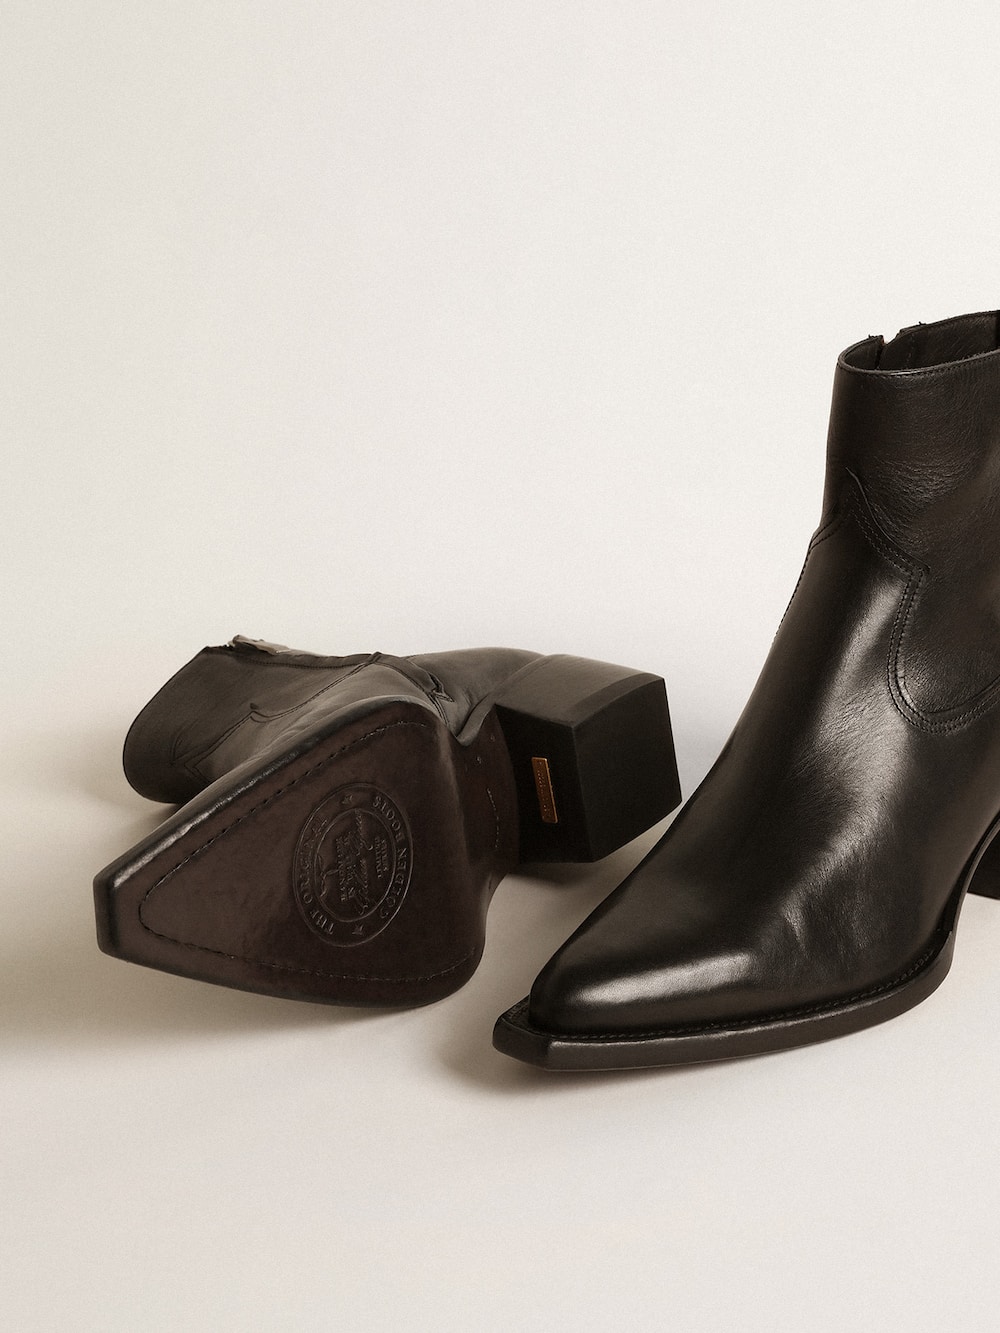 Golden Goose - Men’s low Debbie boots in black leather in 